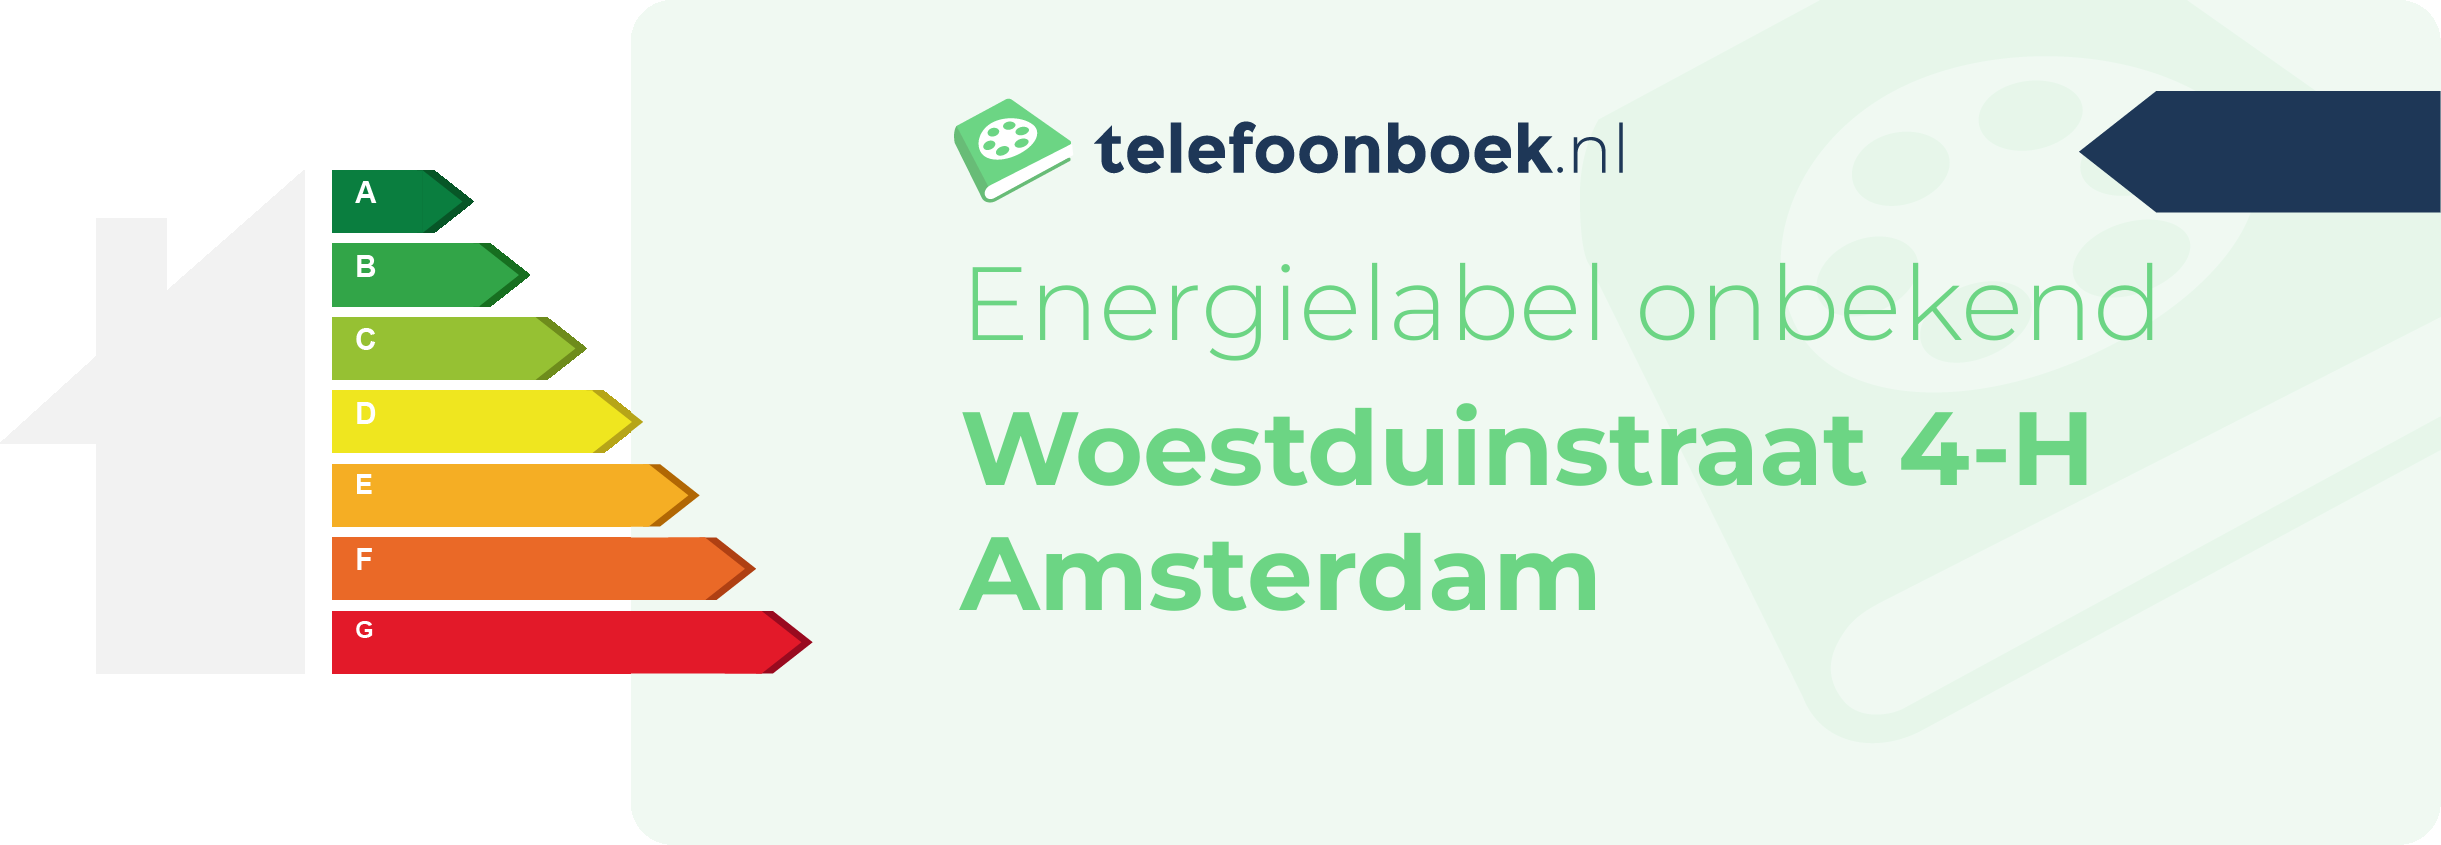 Energielabel Woestduinstraat 4-H Amsterdam